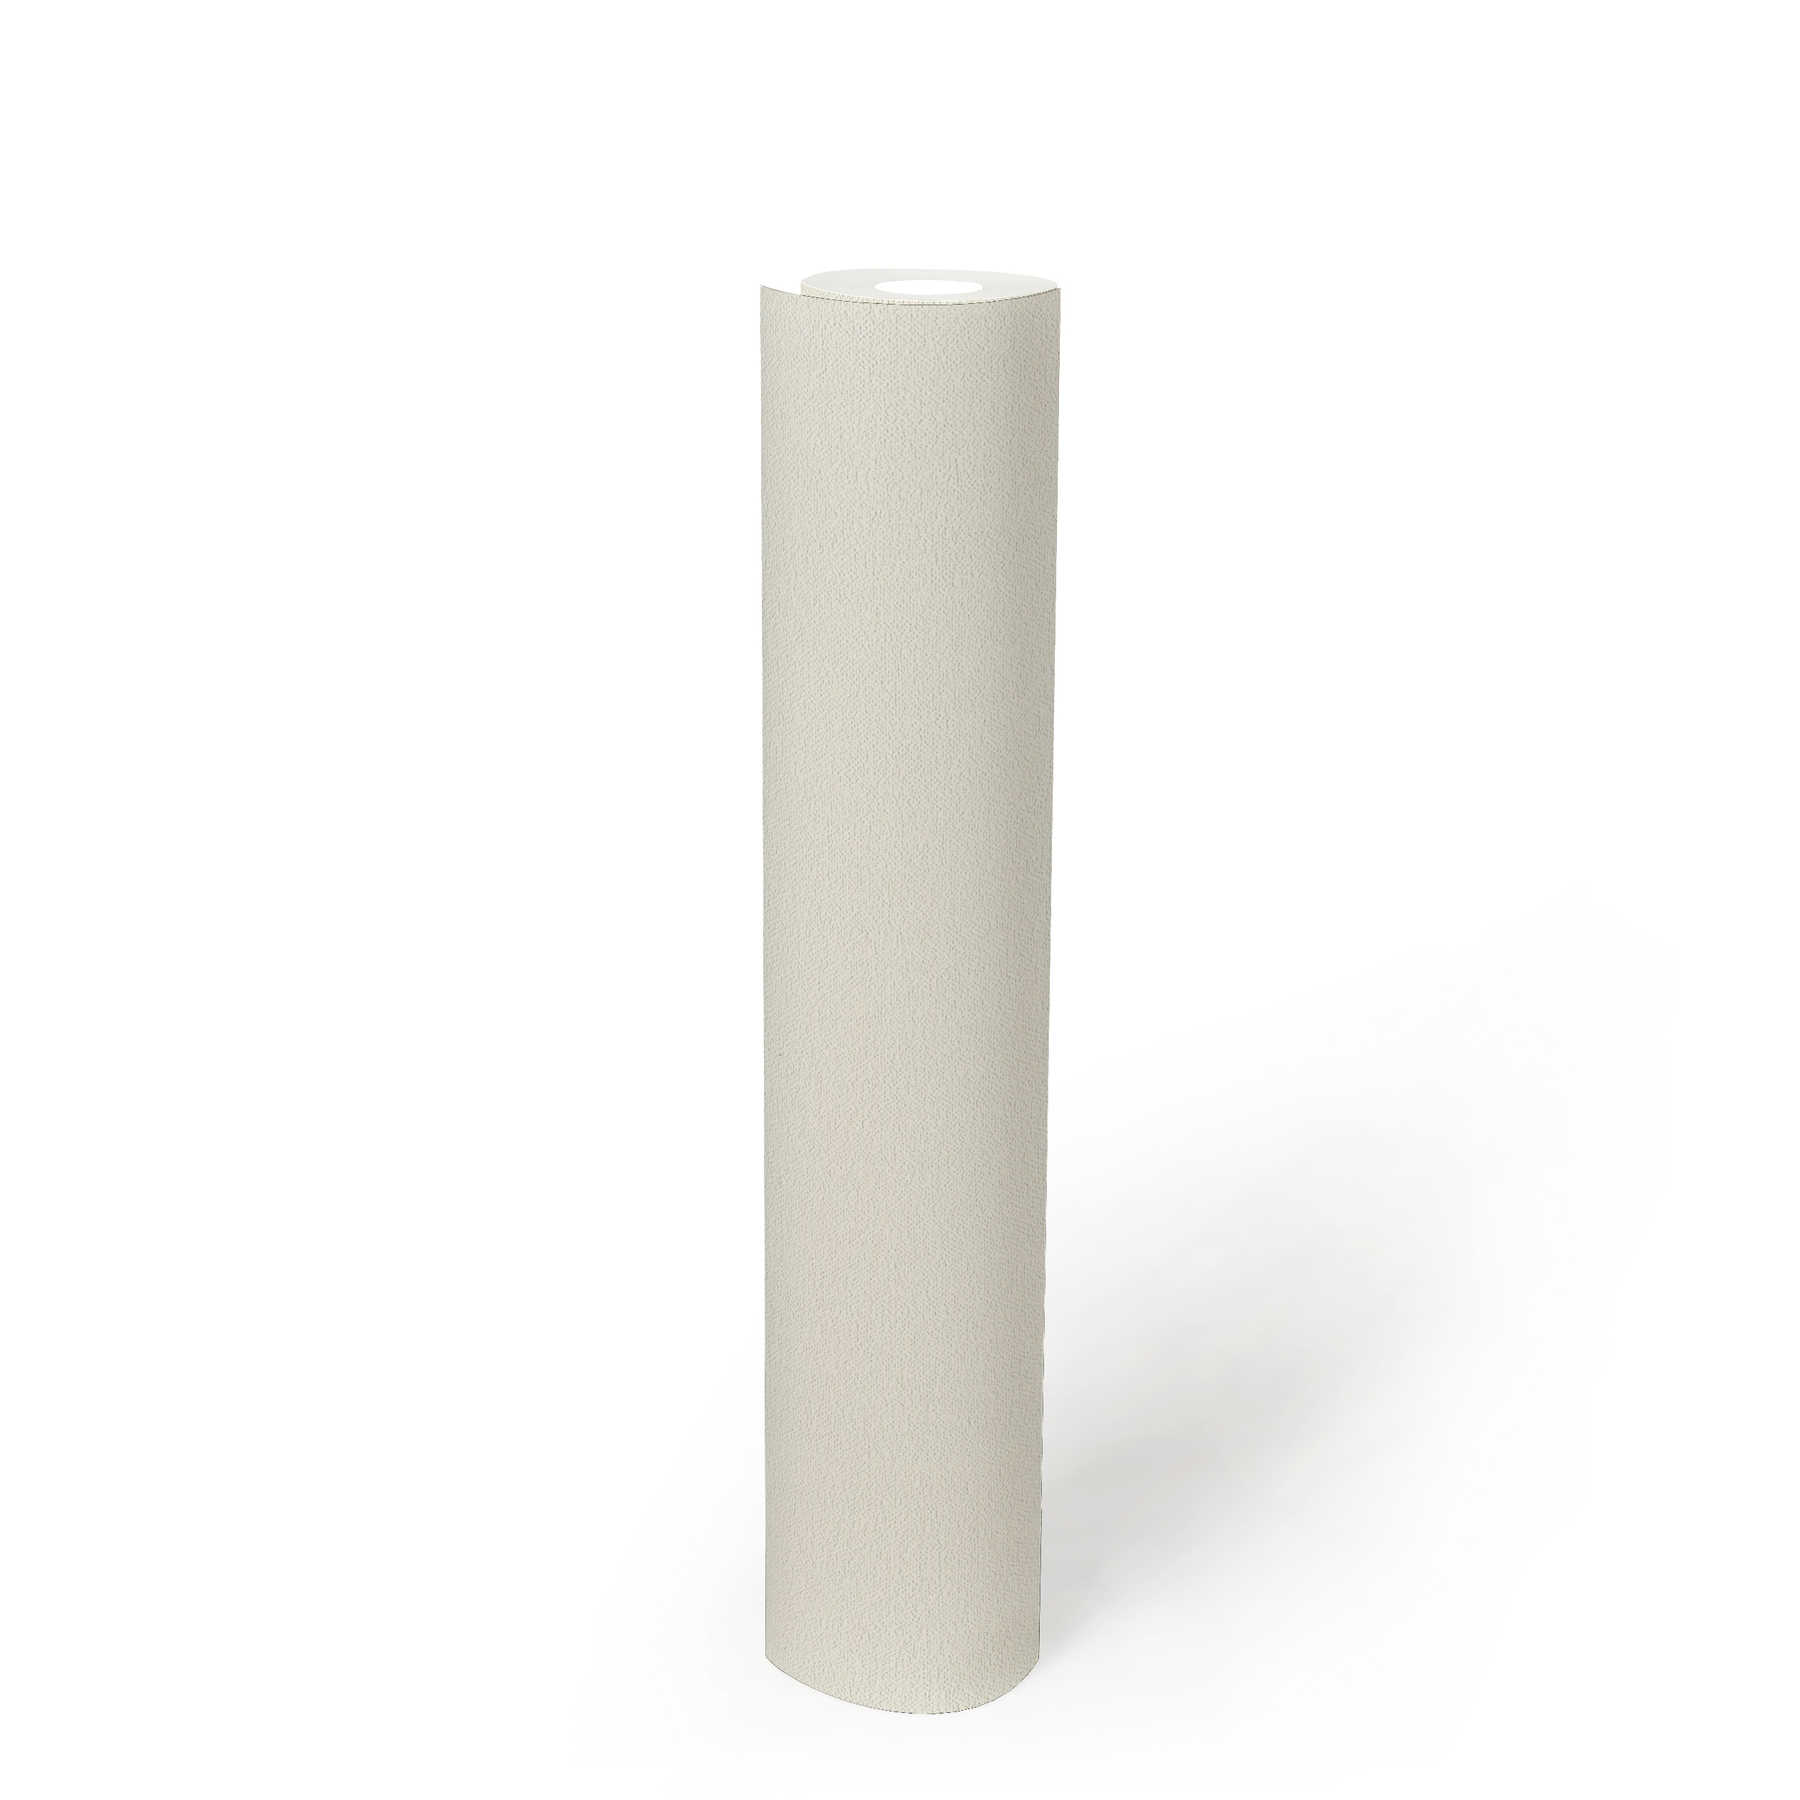             Neutral non-woven wallpaper cream white with foam structure
        